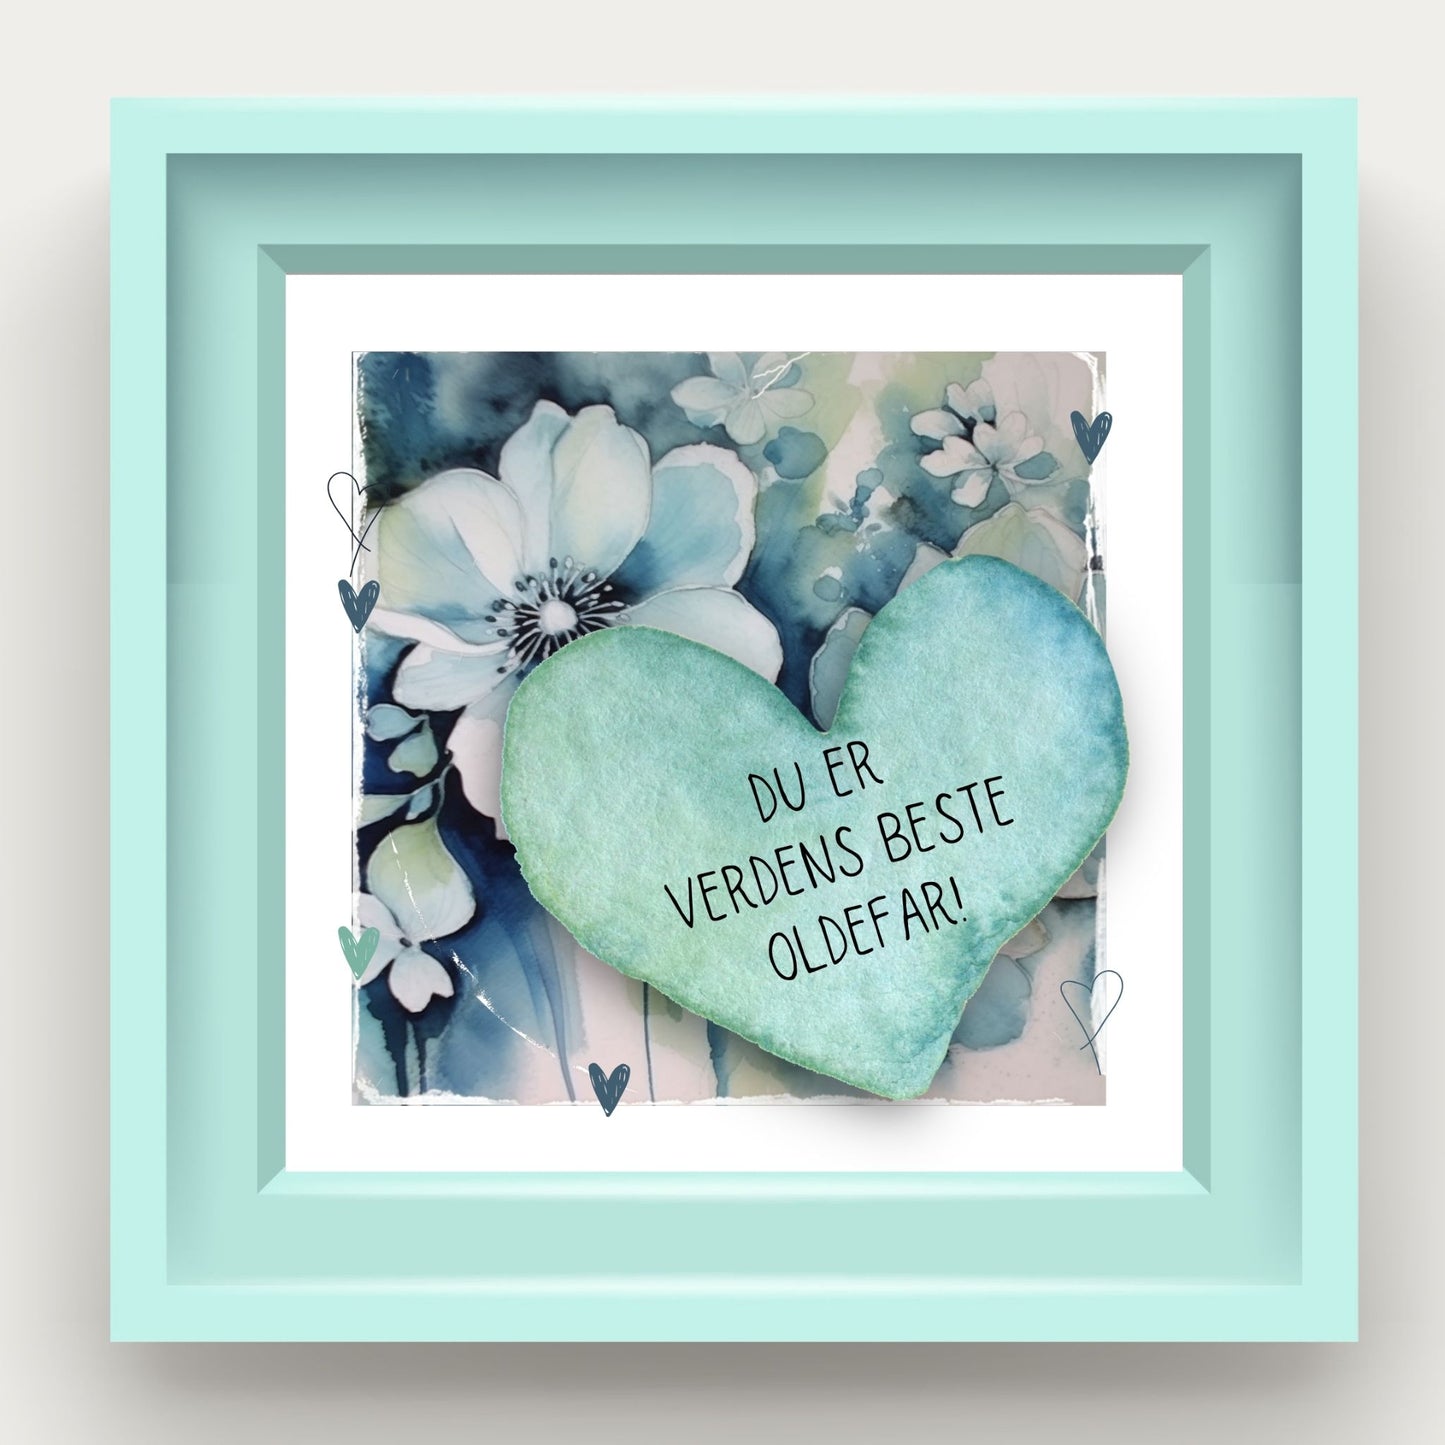 Grafisk plakat med et lyseblått hjerte påført tekst "Du er verdens beste oldefar!". Bagrunn med blomster i blåtoner. Illustrasjonen viser plakat i lyseblå ramme.